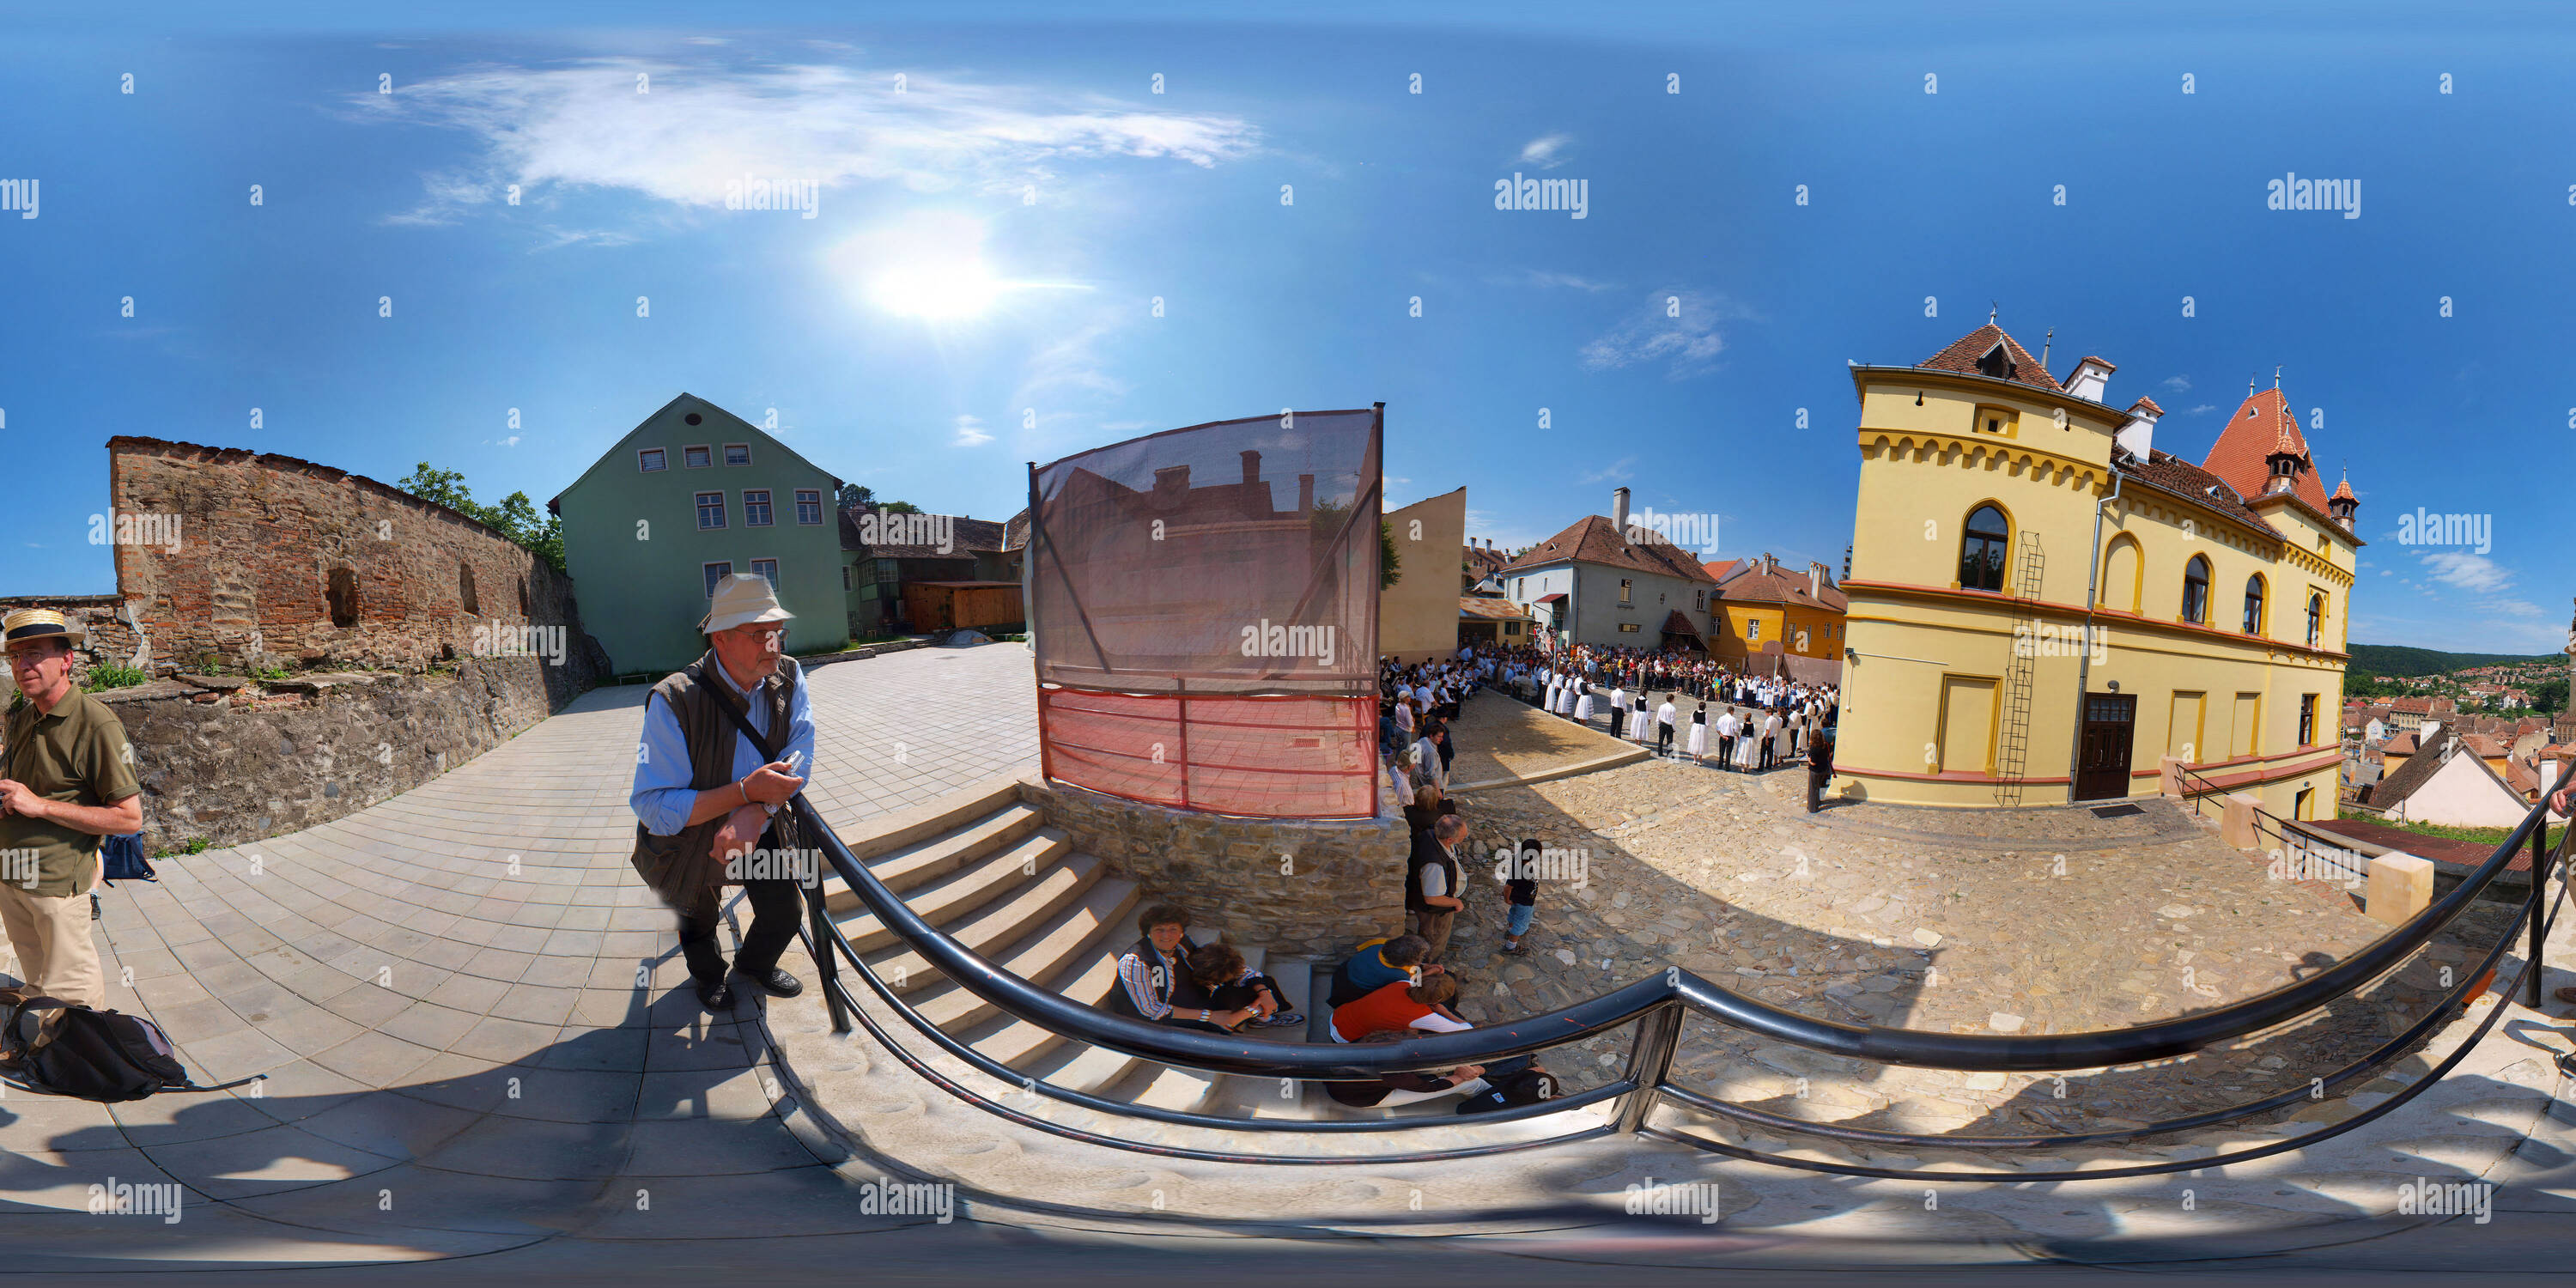 Visualizzazione panoramica a 360 gradi di Il tedesco ballerini in Sighisoara vicino alla Torre dell Orologio (pano2)